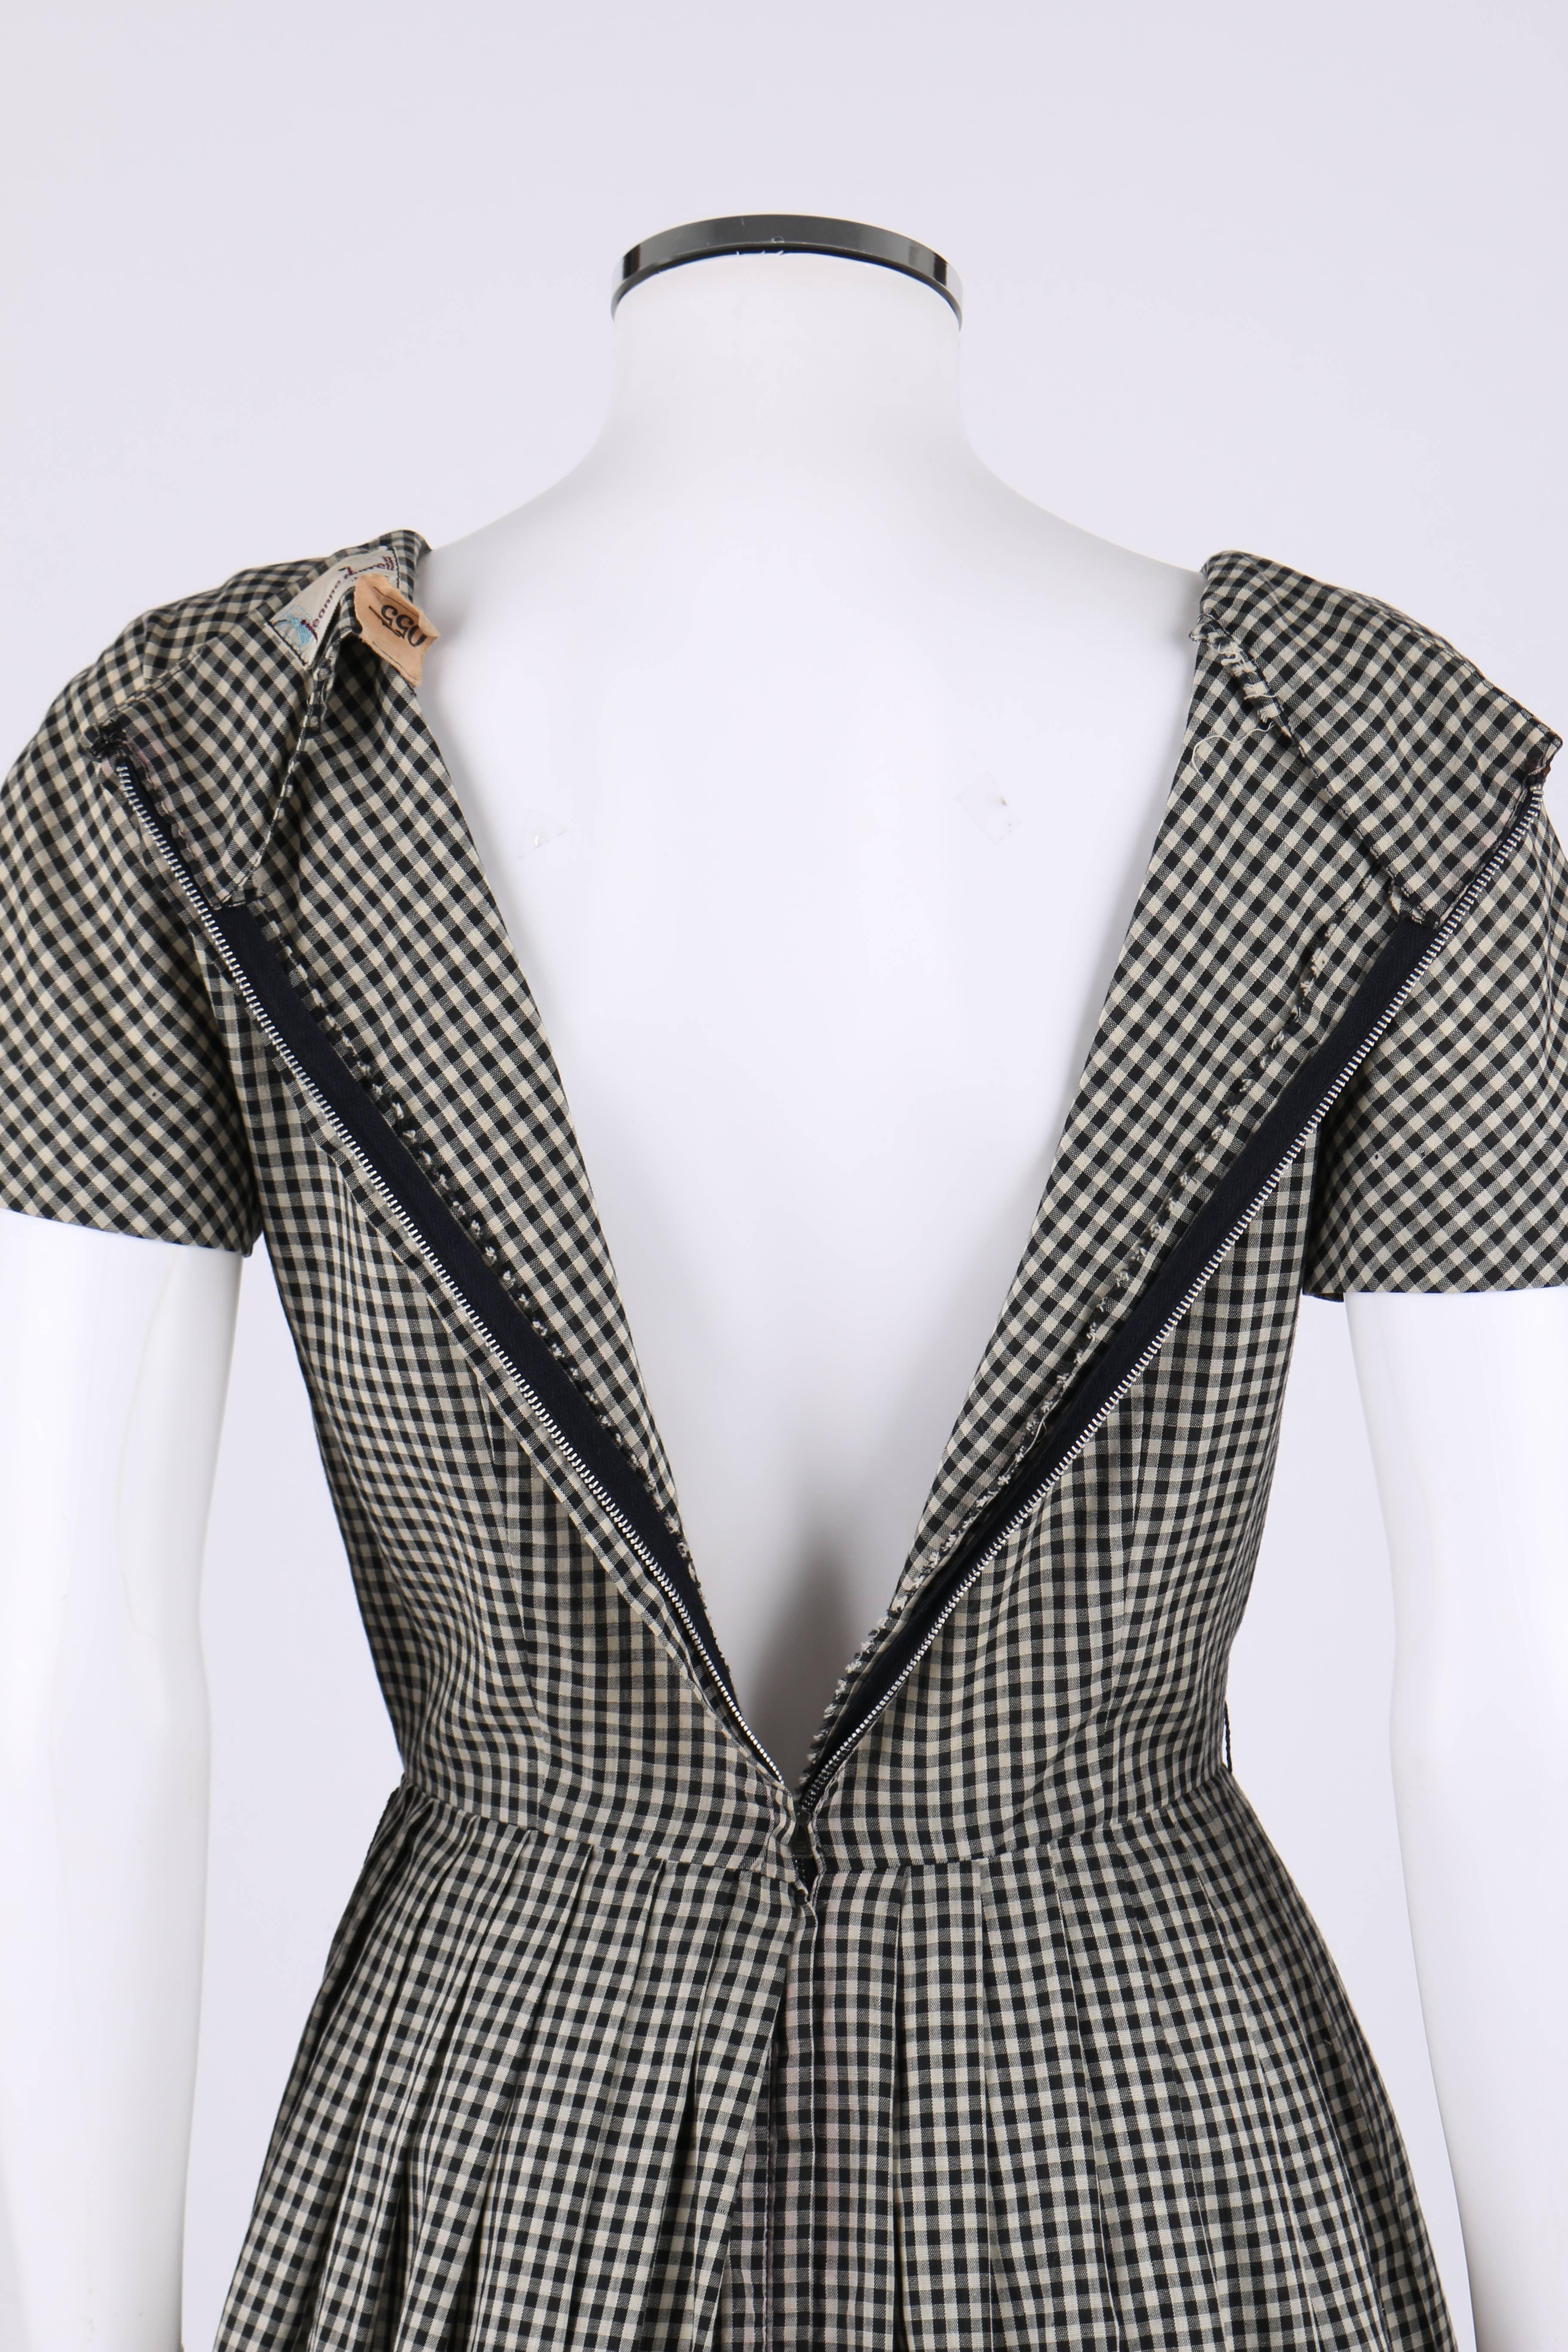 JEANNE DURRELL c.1950's Black White Gingham Avant Garde Applique Day Dress 2